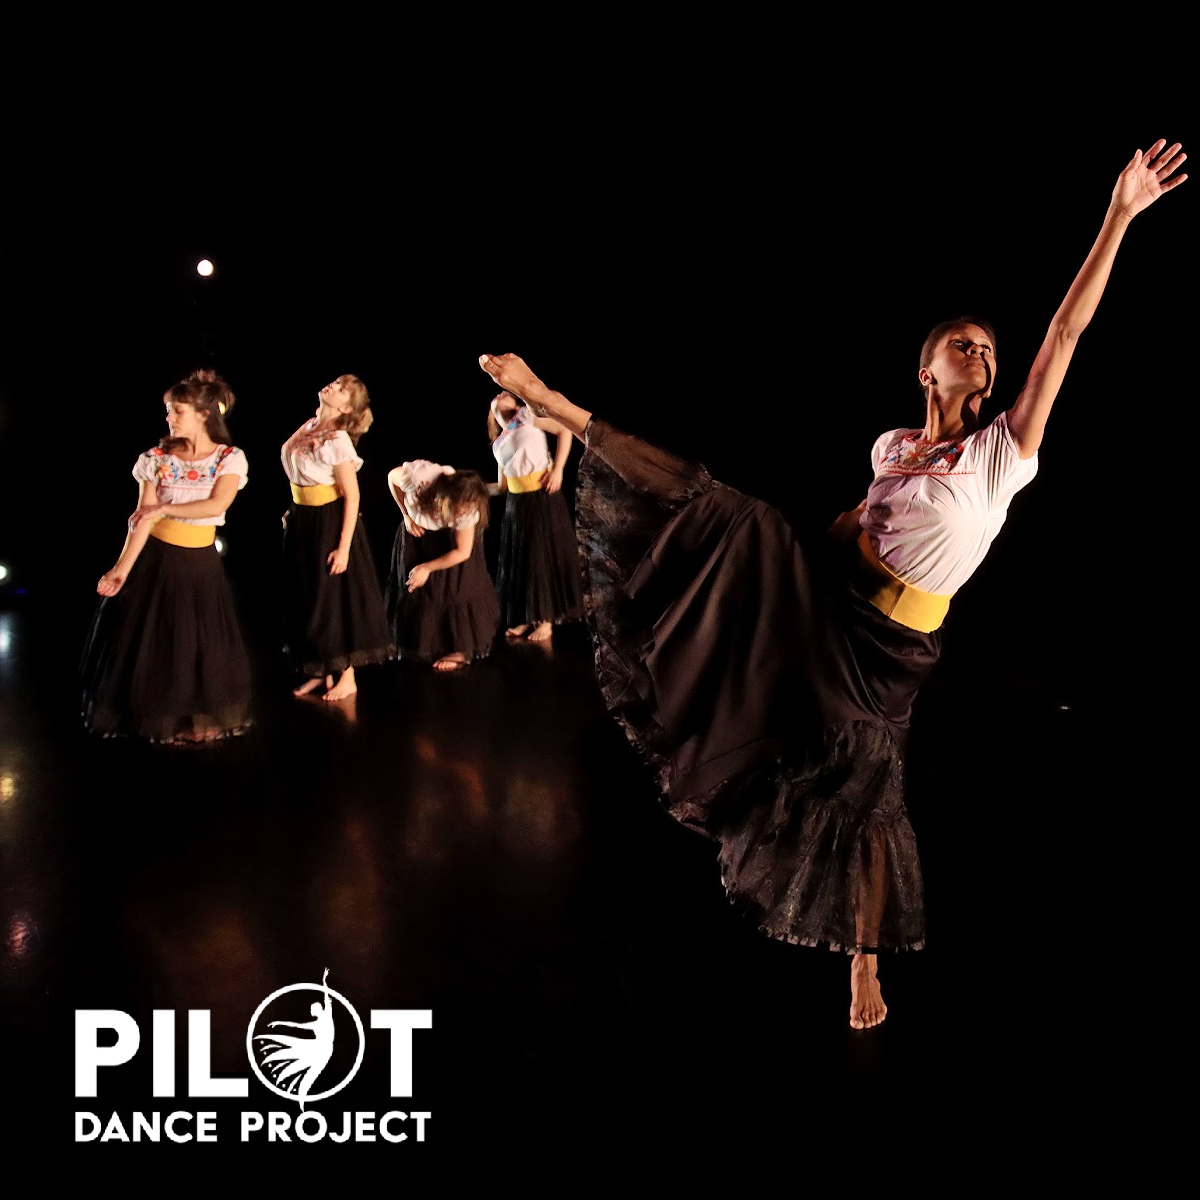 Pilot Dance Project